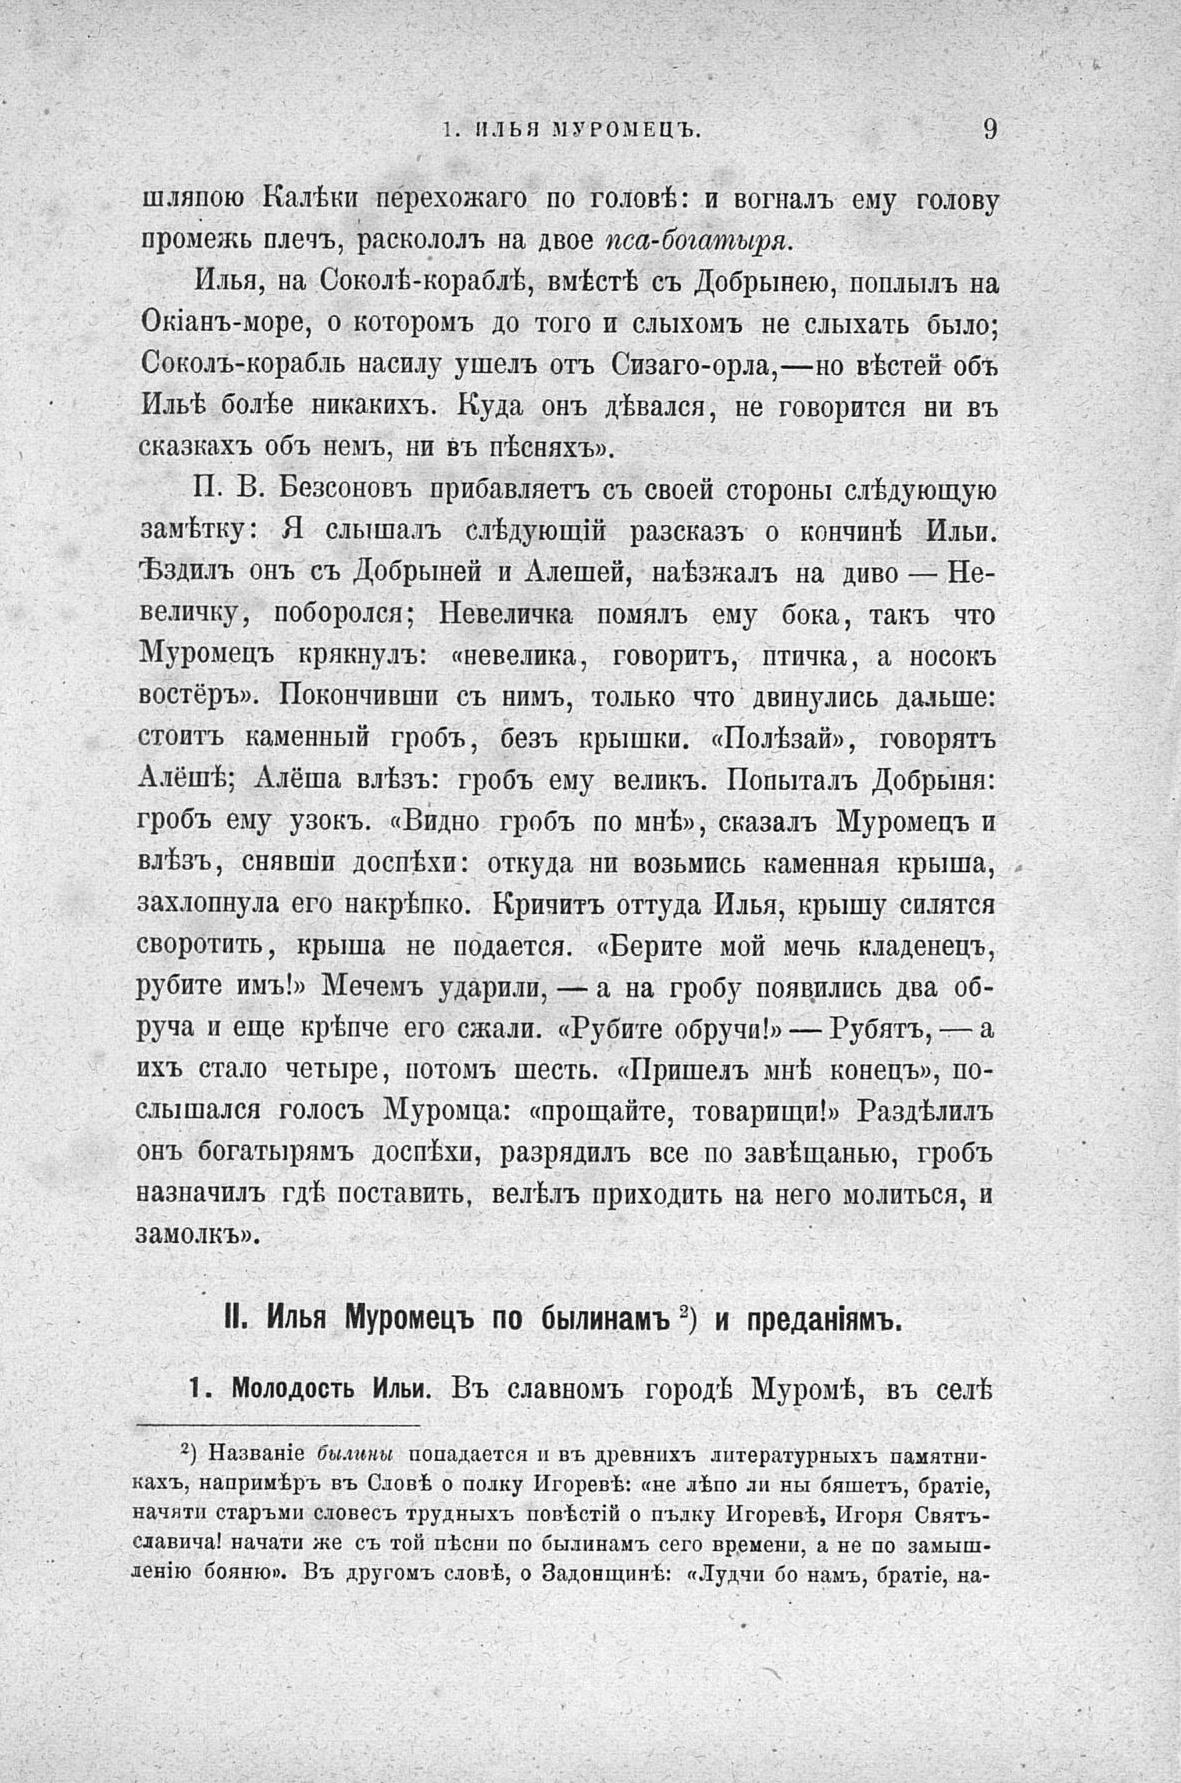 Русские народные картинки : Книги I—V / Собрал и описал Д. Ровинский. — Санктпетербург: Типография Императорской Академии Наук, 1881